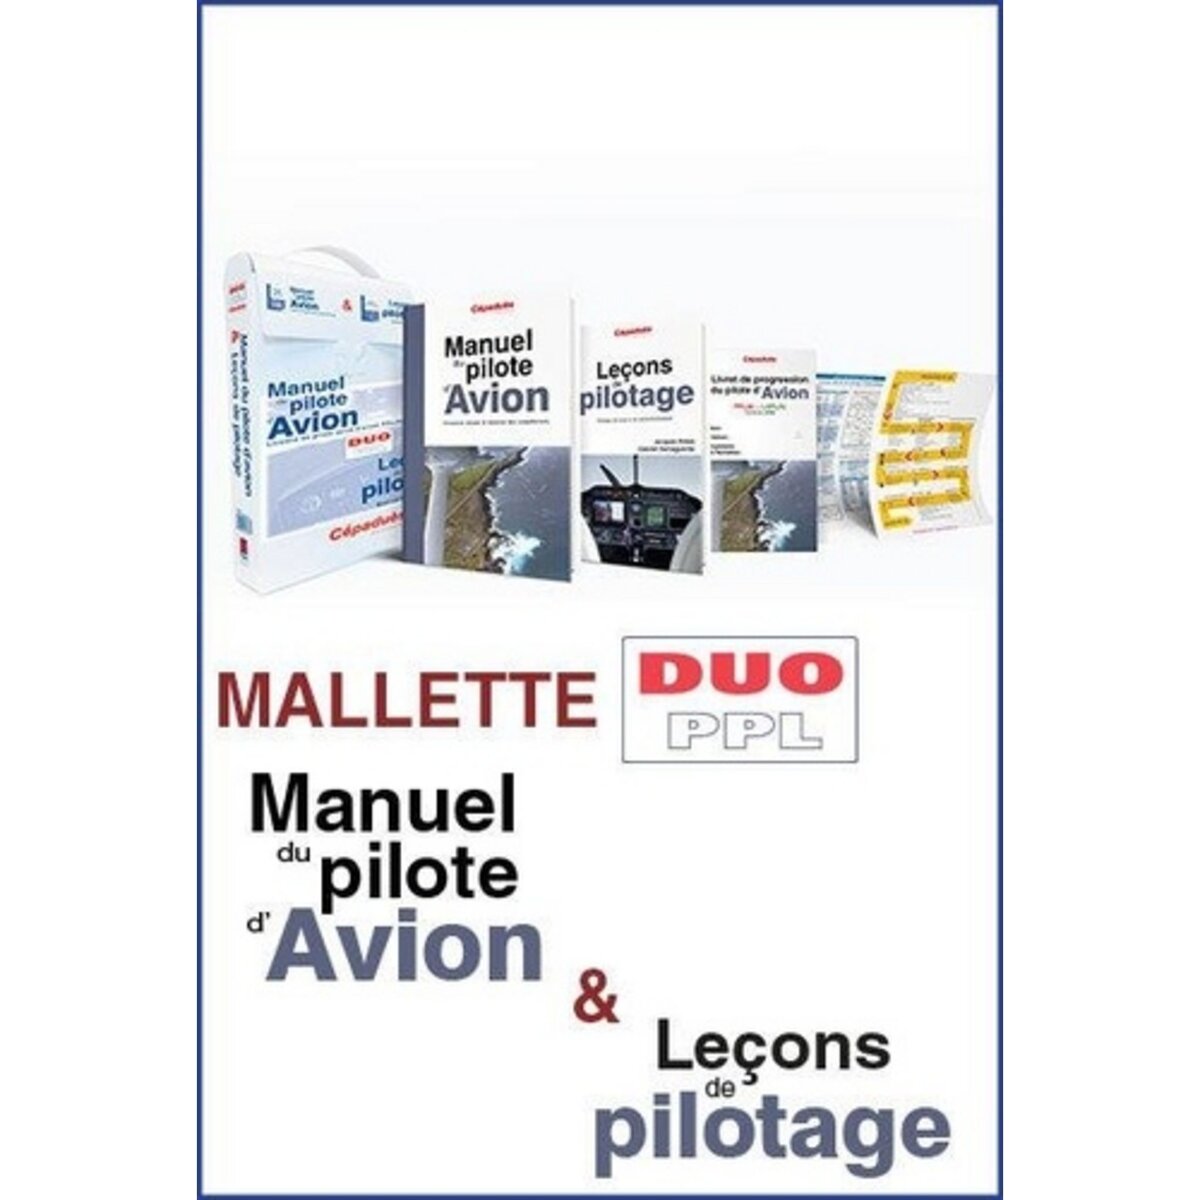  MALLETTE DUO PPL. MANUEL DU PILOTE D'AVION ; LECONS DE PILOTAGE, Cépaduès